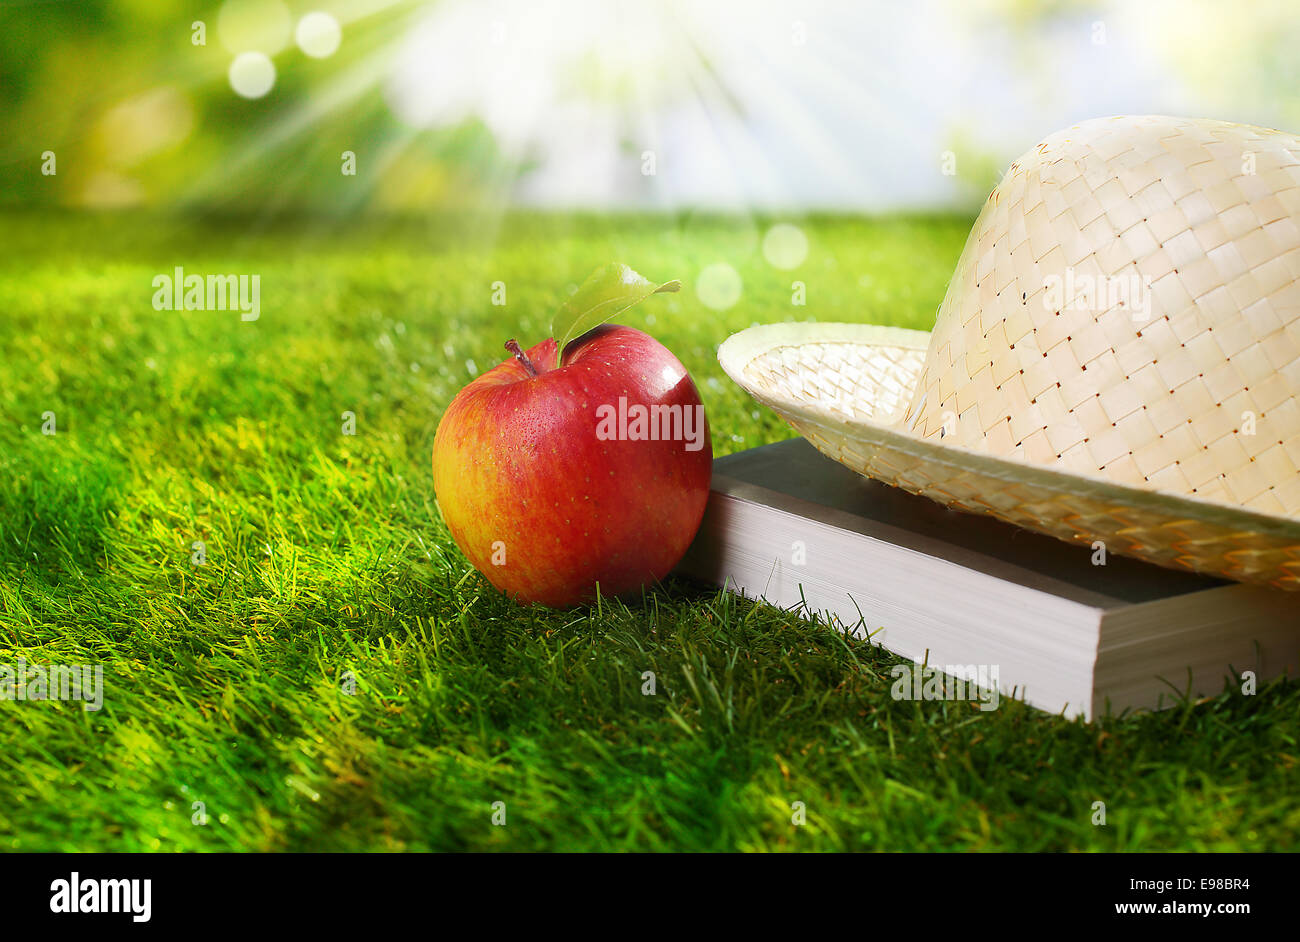 Cappello, libro e fresche e mature apple rosso giacenti su un rigoglioso giardino prato sotto i caldi raggi del sole estivo con bokeh e lens flare Foto Stock